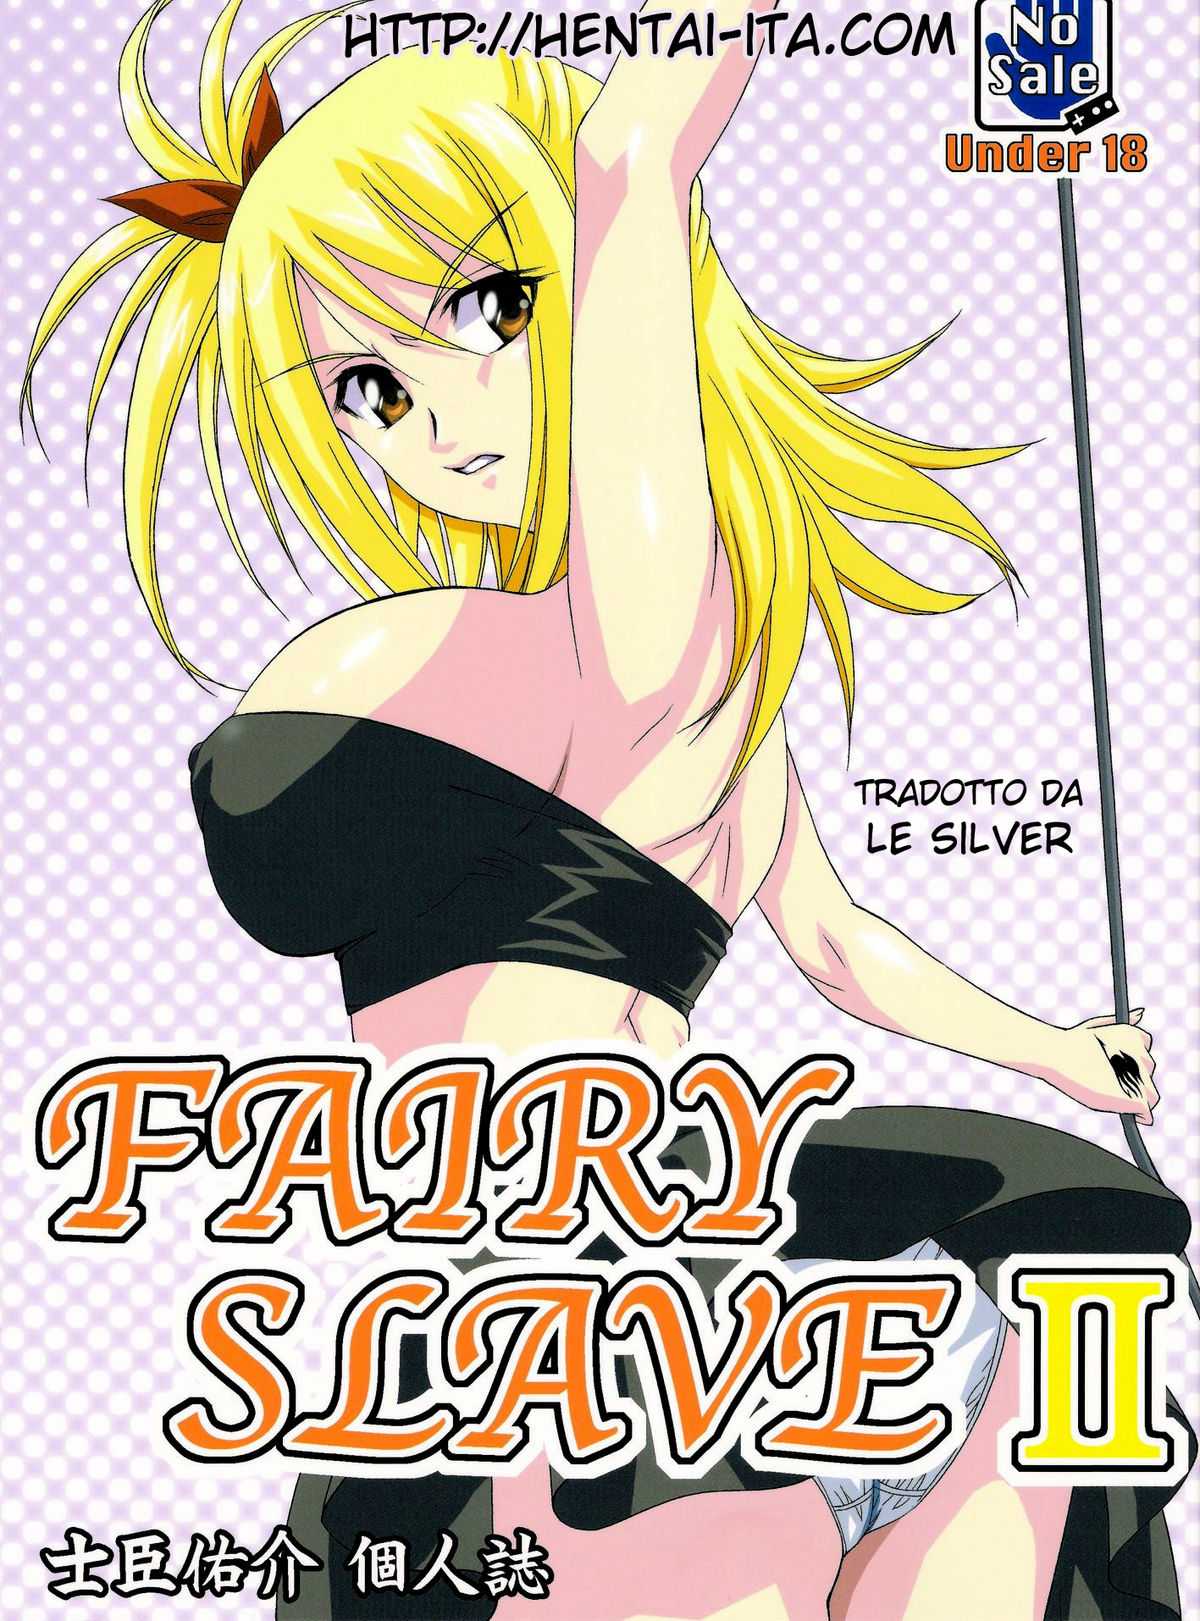 [Tsurikichi-Doumei] Fairy slave II (Fairy tail) [italian] 